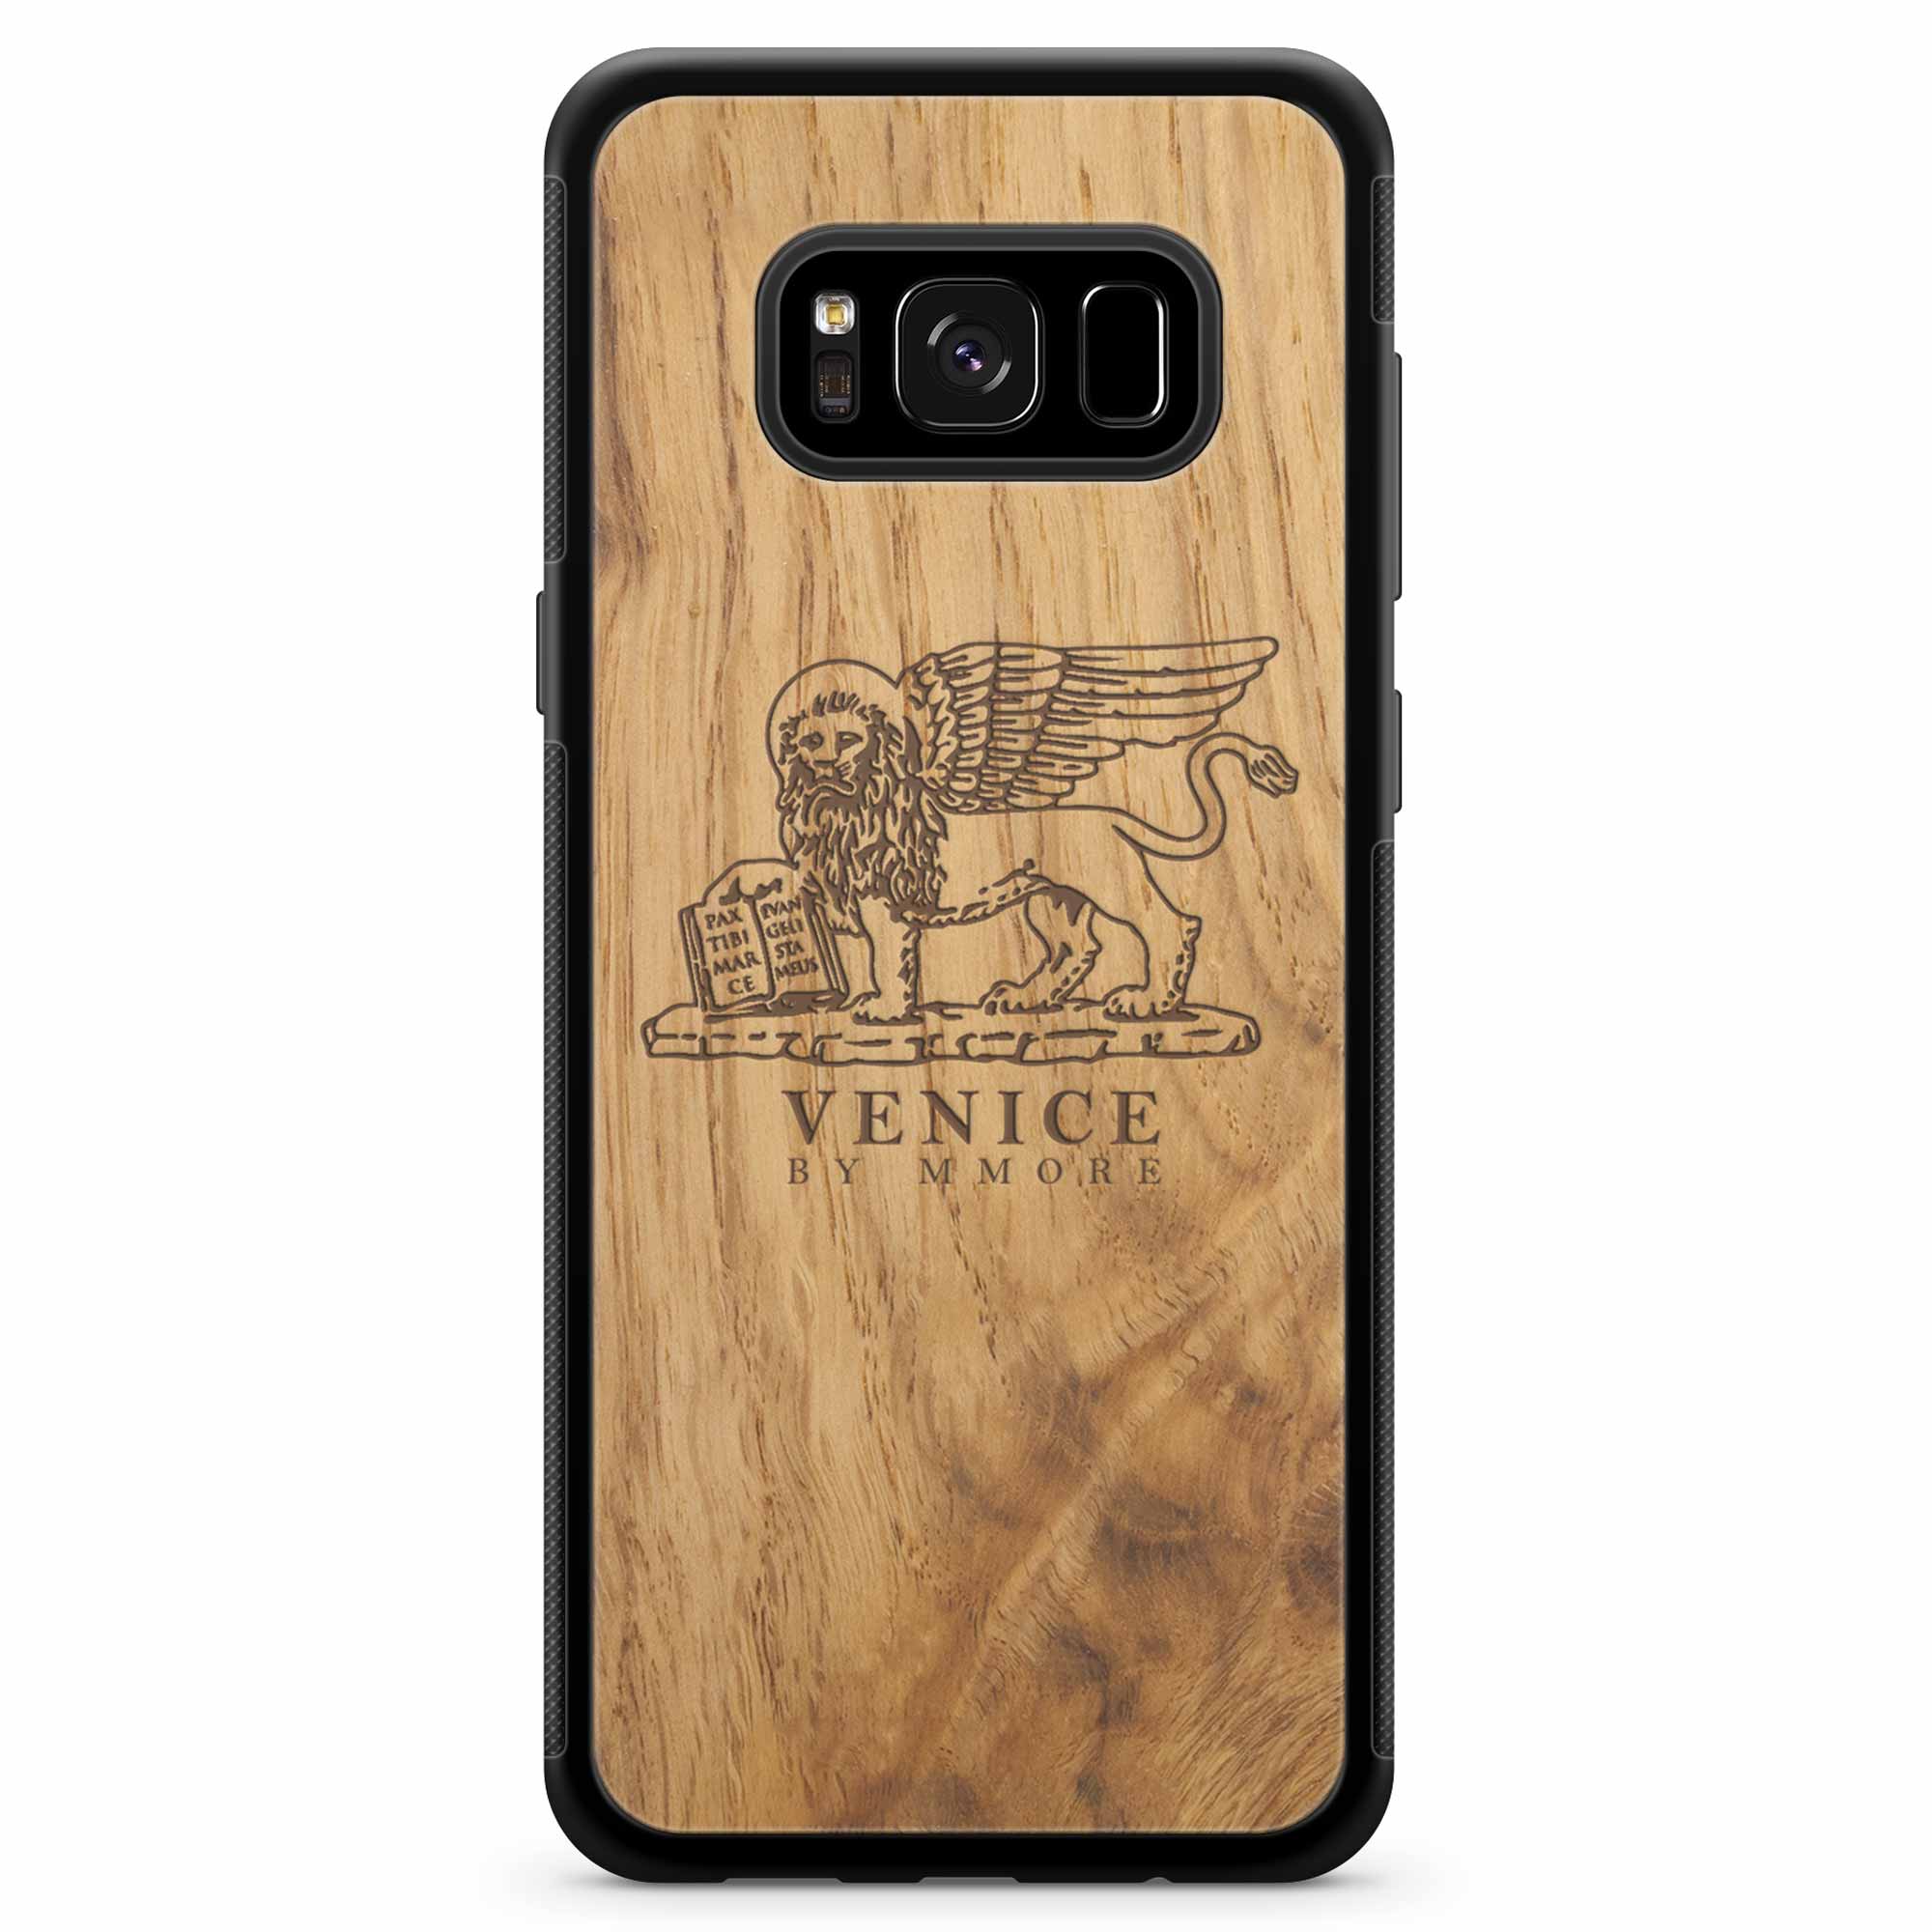 Custodia in legno antico per Samsung S8 con leone di Venezia